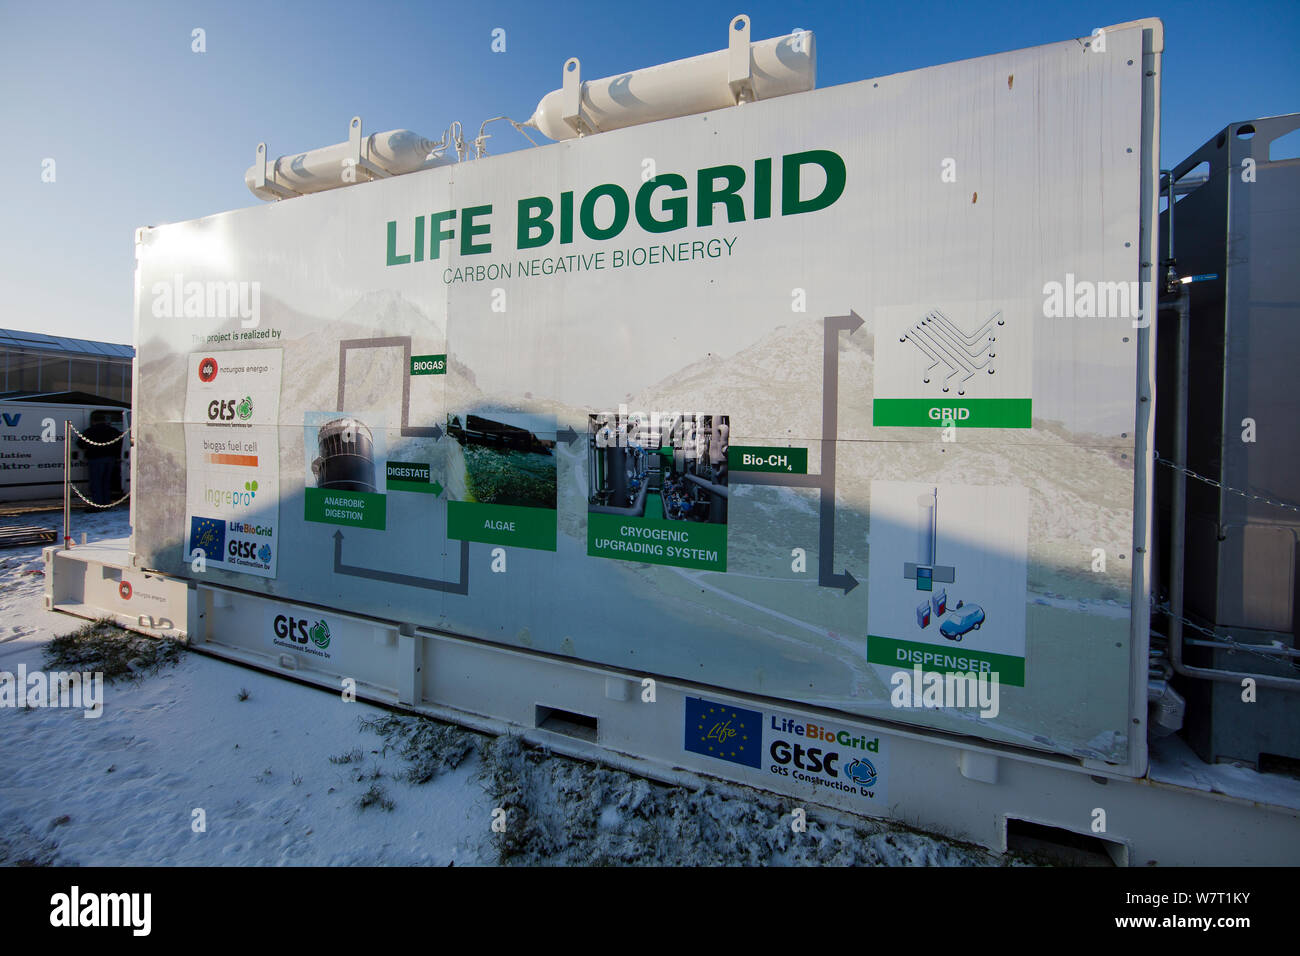 Panneau d'information expliquant le processus impliqué dans la production de biogaz et ses différentes utilisations, Espagne, janvier 2013. Banque D'Images